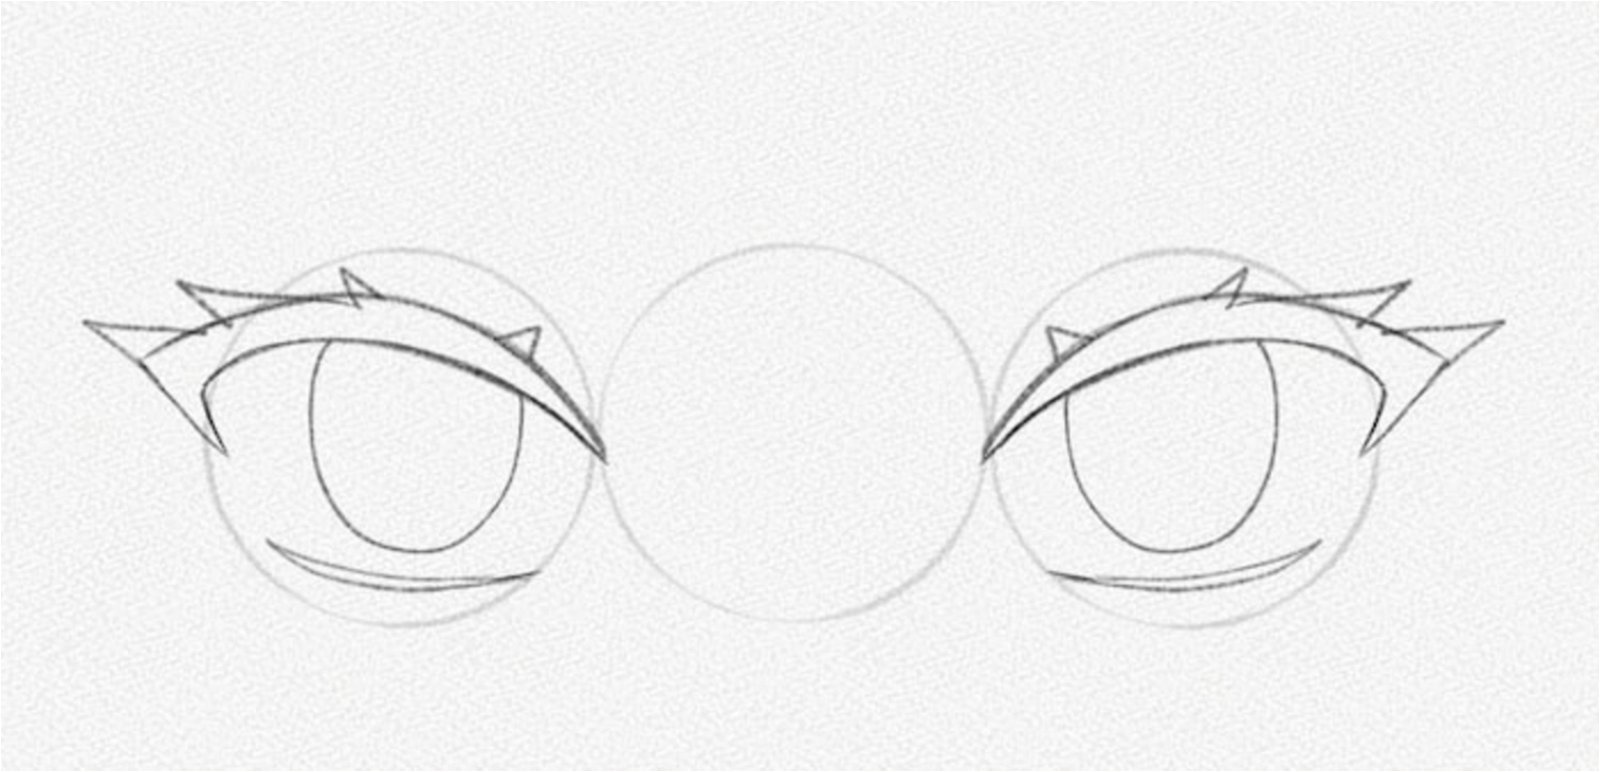 Cómo dibujar ojos de anime paso a paso fácil y rápido